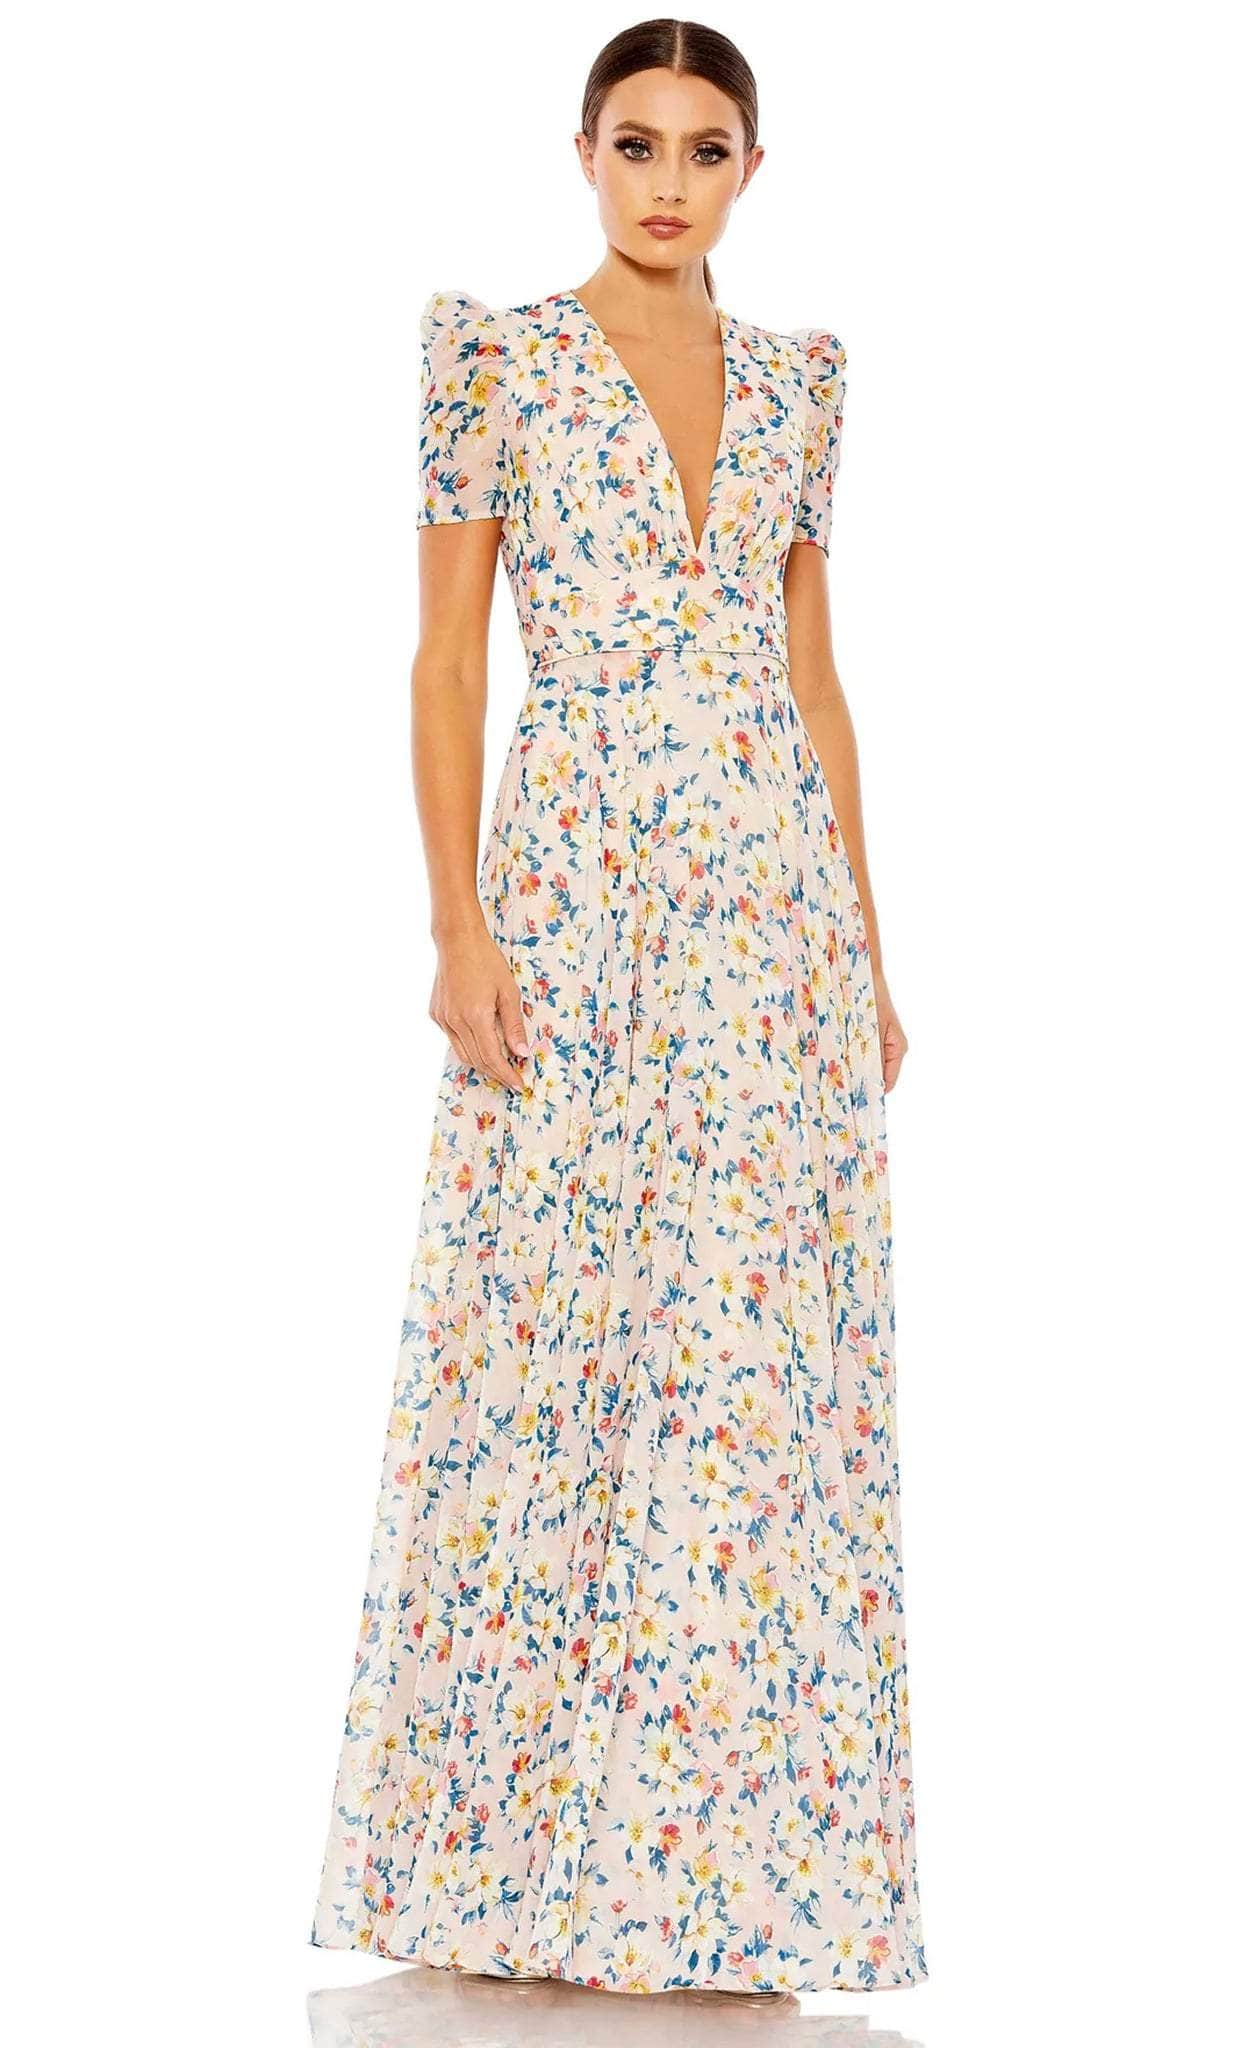 Ieena Duggal 55642 - Short-Sleeved Floral Formal Dress
